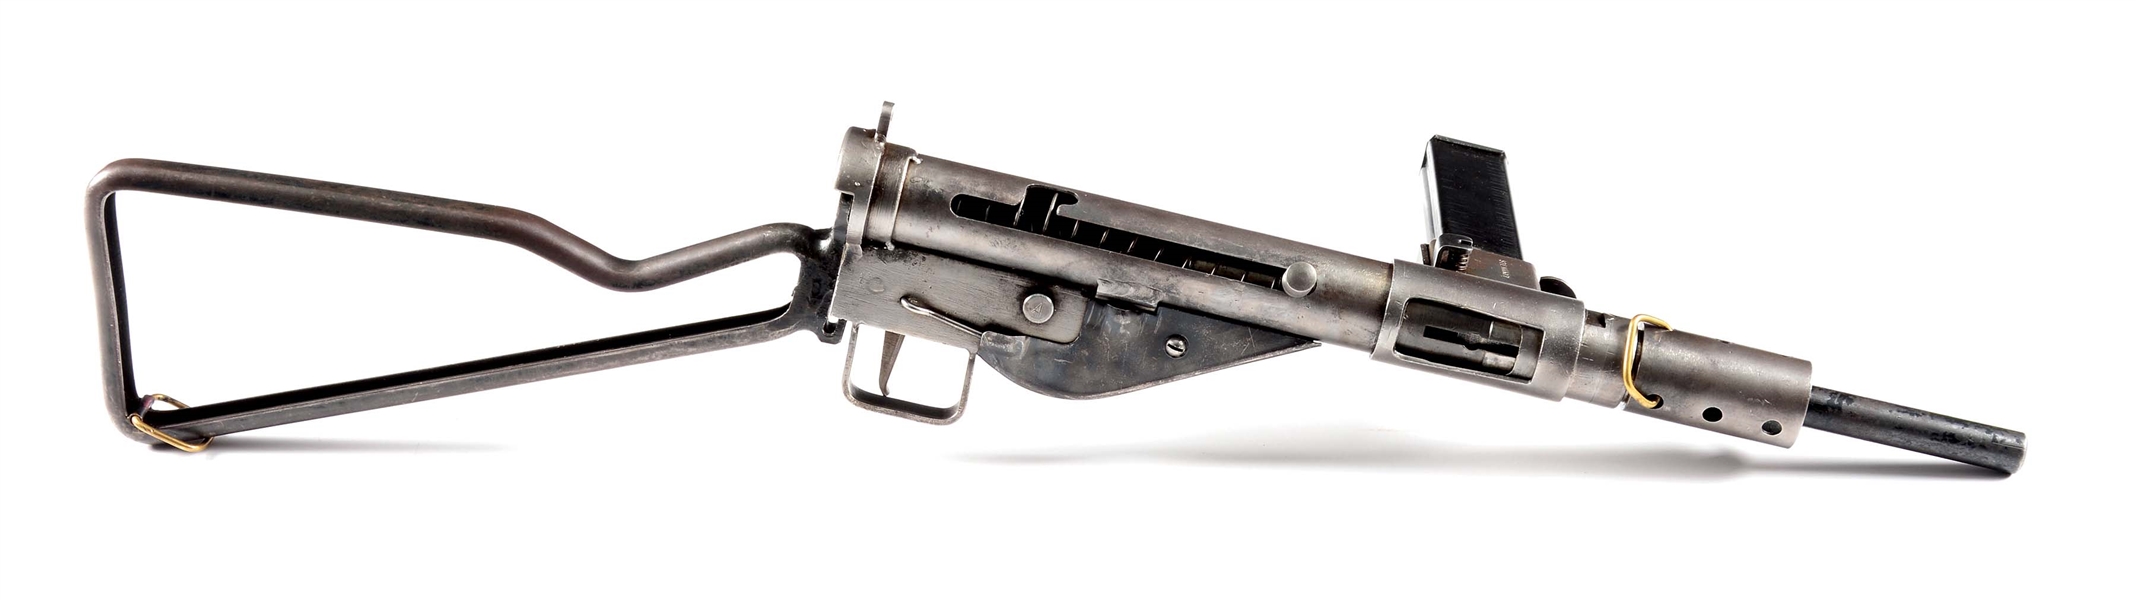 (N) ORIGINAL BRITISH STEN MK II MACHINE GUN WITH PARTS KIT (CURIO & RELIC).